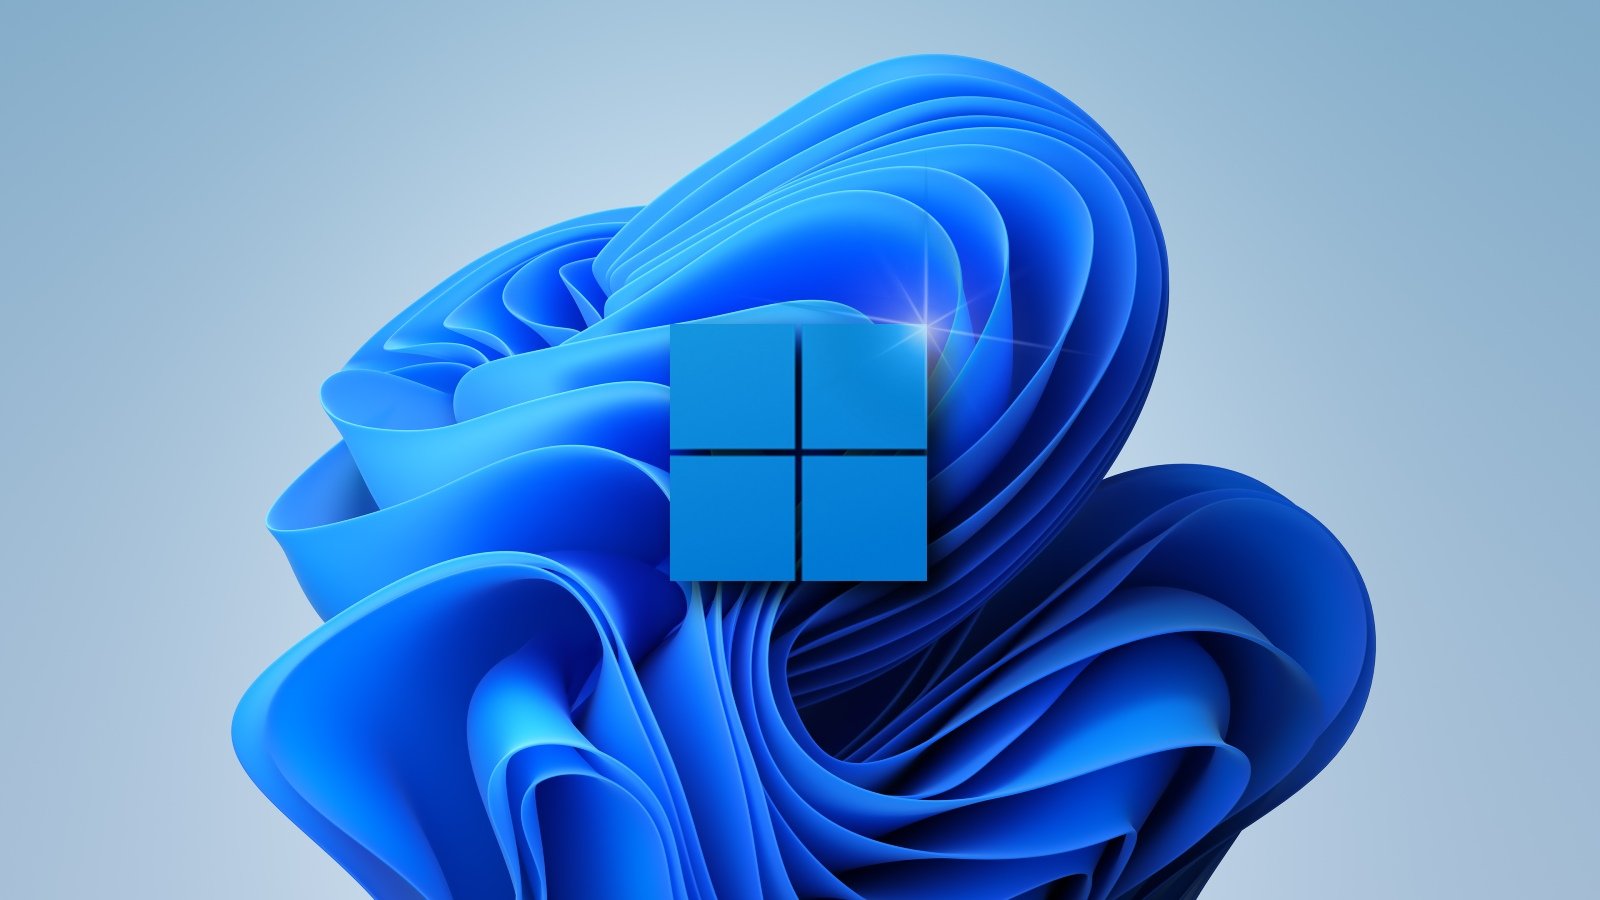 Windows 11 xác nhận đã chính thức tung ra, đem đến những tính năng độc đáo và hiệu suất tốt hơn. Hãy cập nhật ngay và trải nghiệm những tính năng mới trong hệ điều hành này. Nhấn chuột để xem hình ảnh tuyệt đẹp về Windows 11 xác nhận và thưởng thức giao diện mới lạ đầy thú vị.